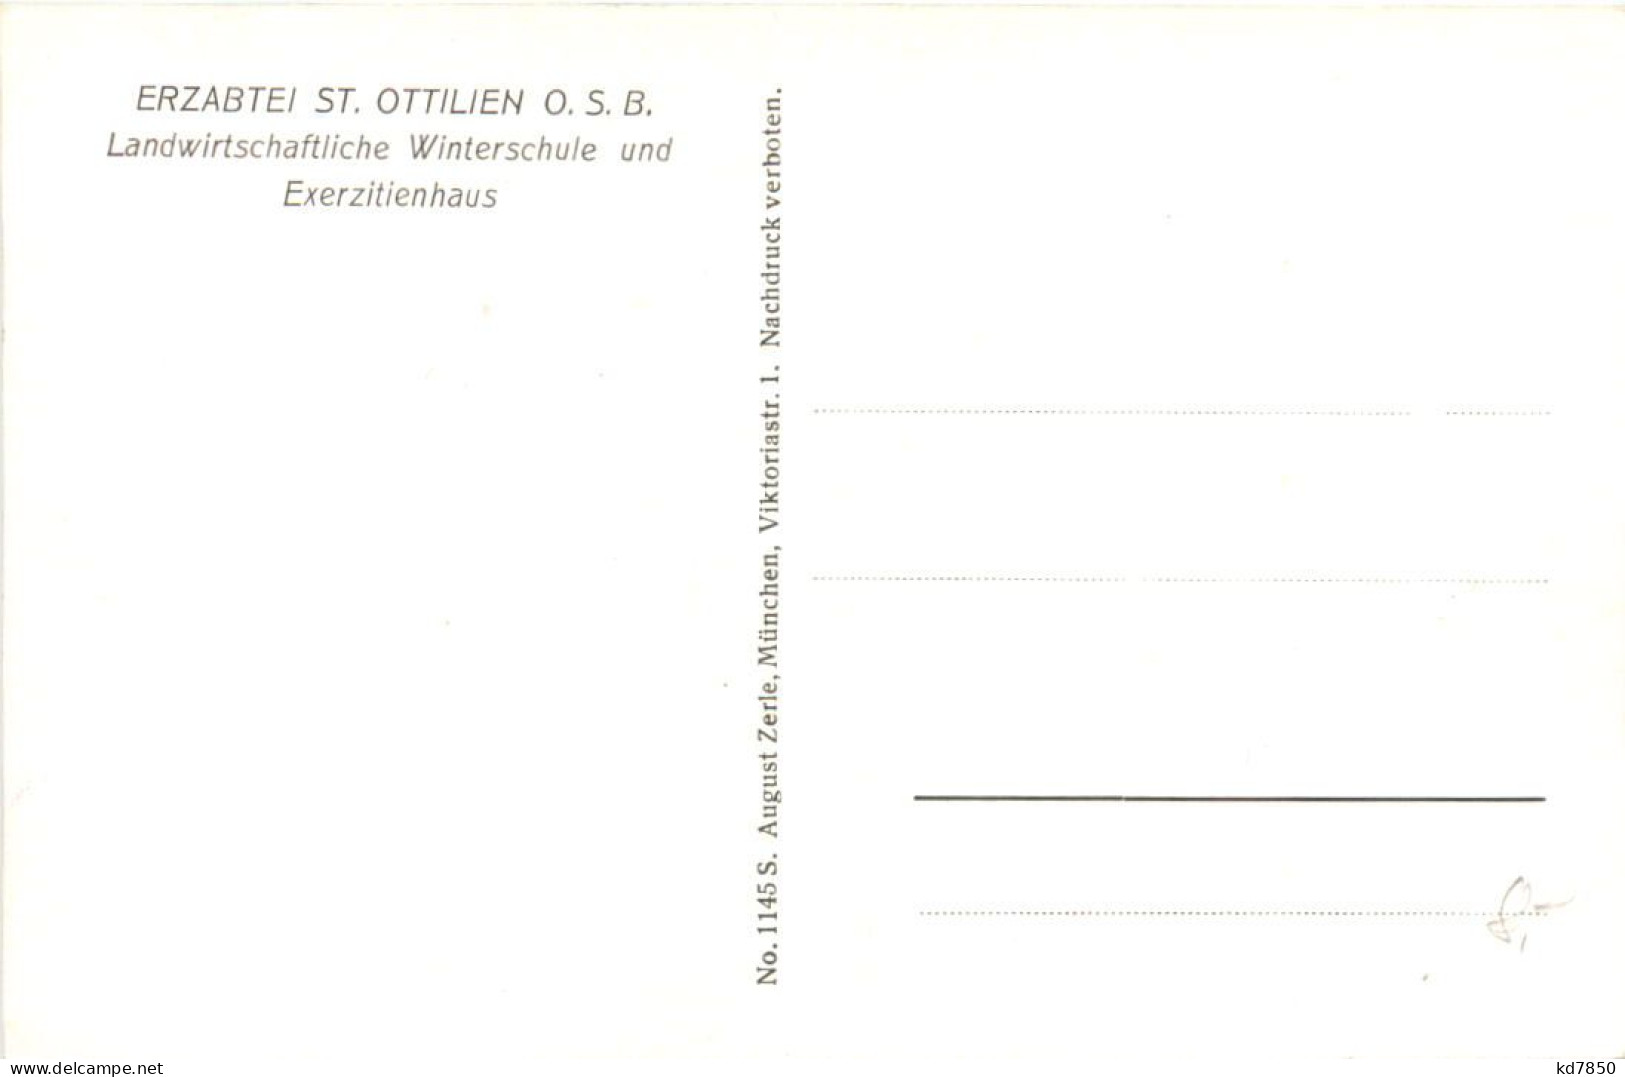 Erzabtei St. Ottilien, Landw. Winterschule - Landsberg